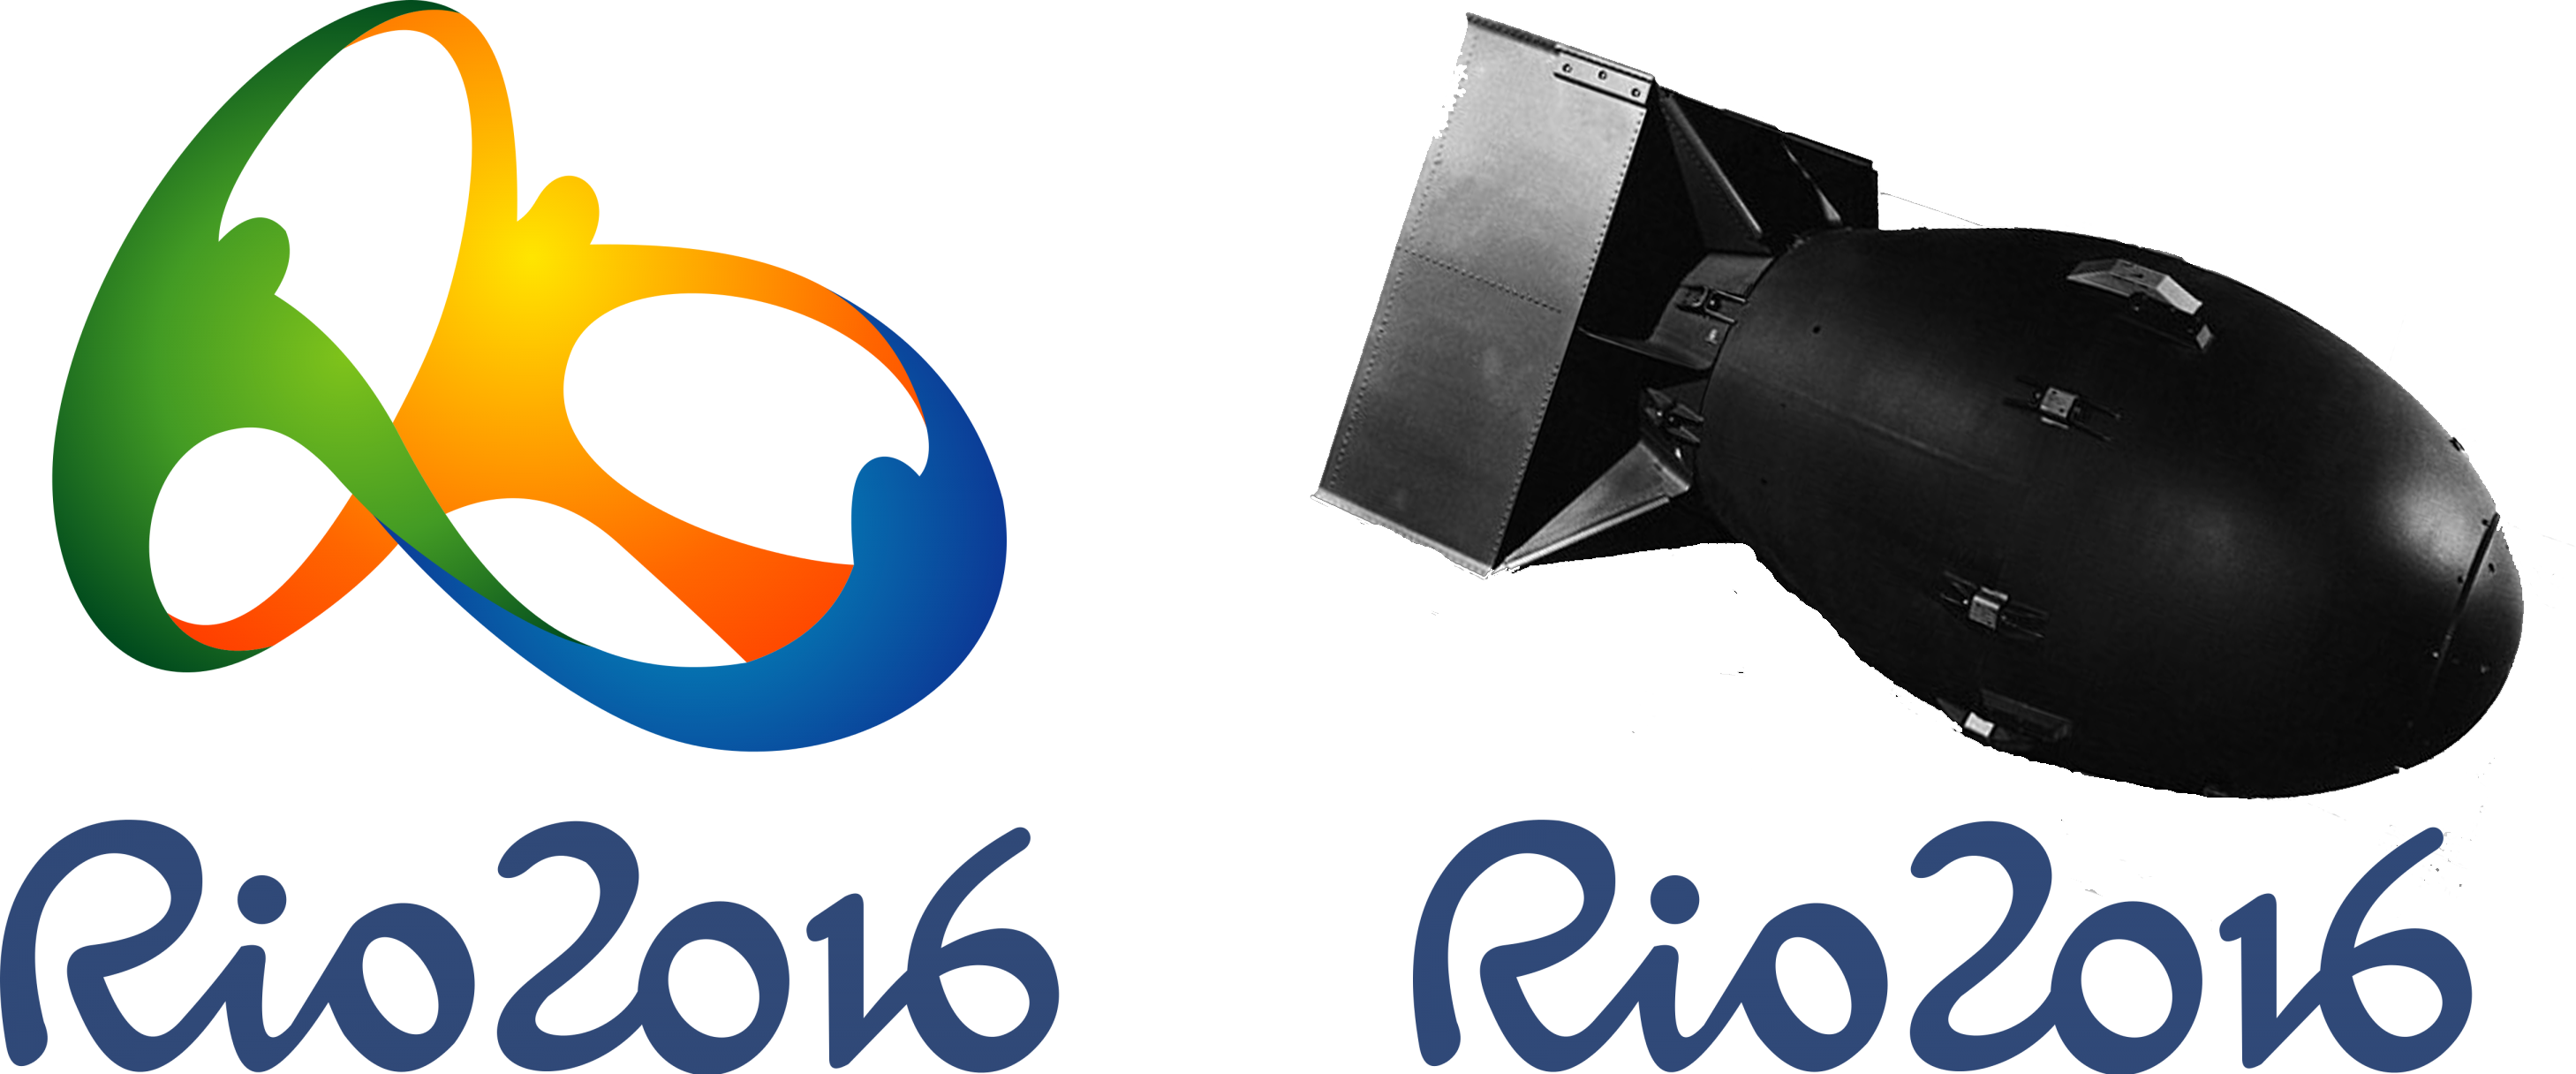 Humormore Accurate Rio 2016 Logo - Rio 2016 Logo Clipart (2917x1216), Png Download